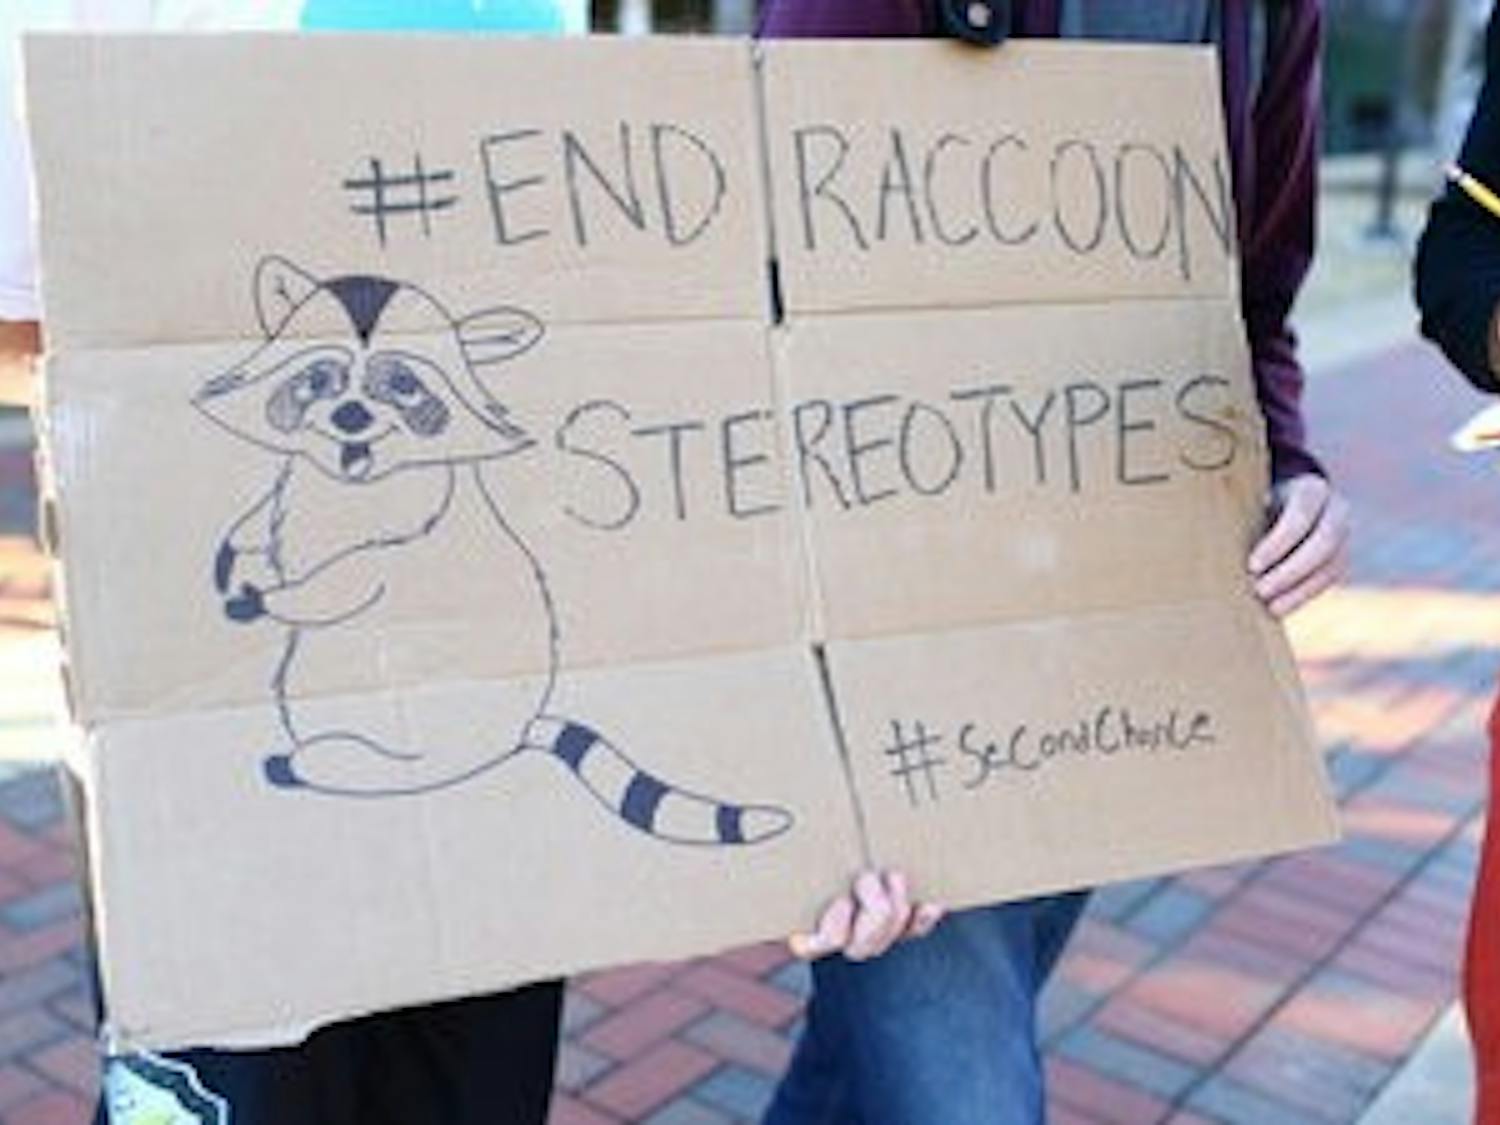 Ending Raccoon Stereotypes